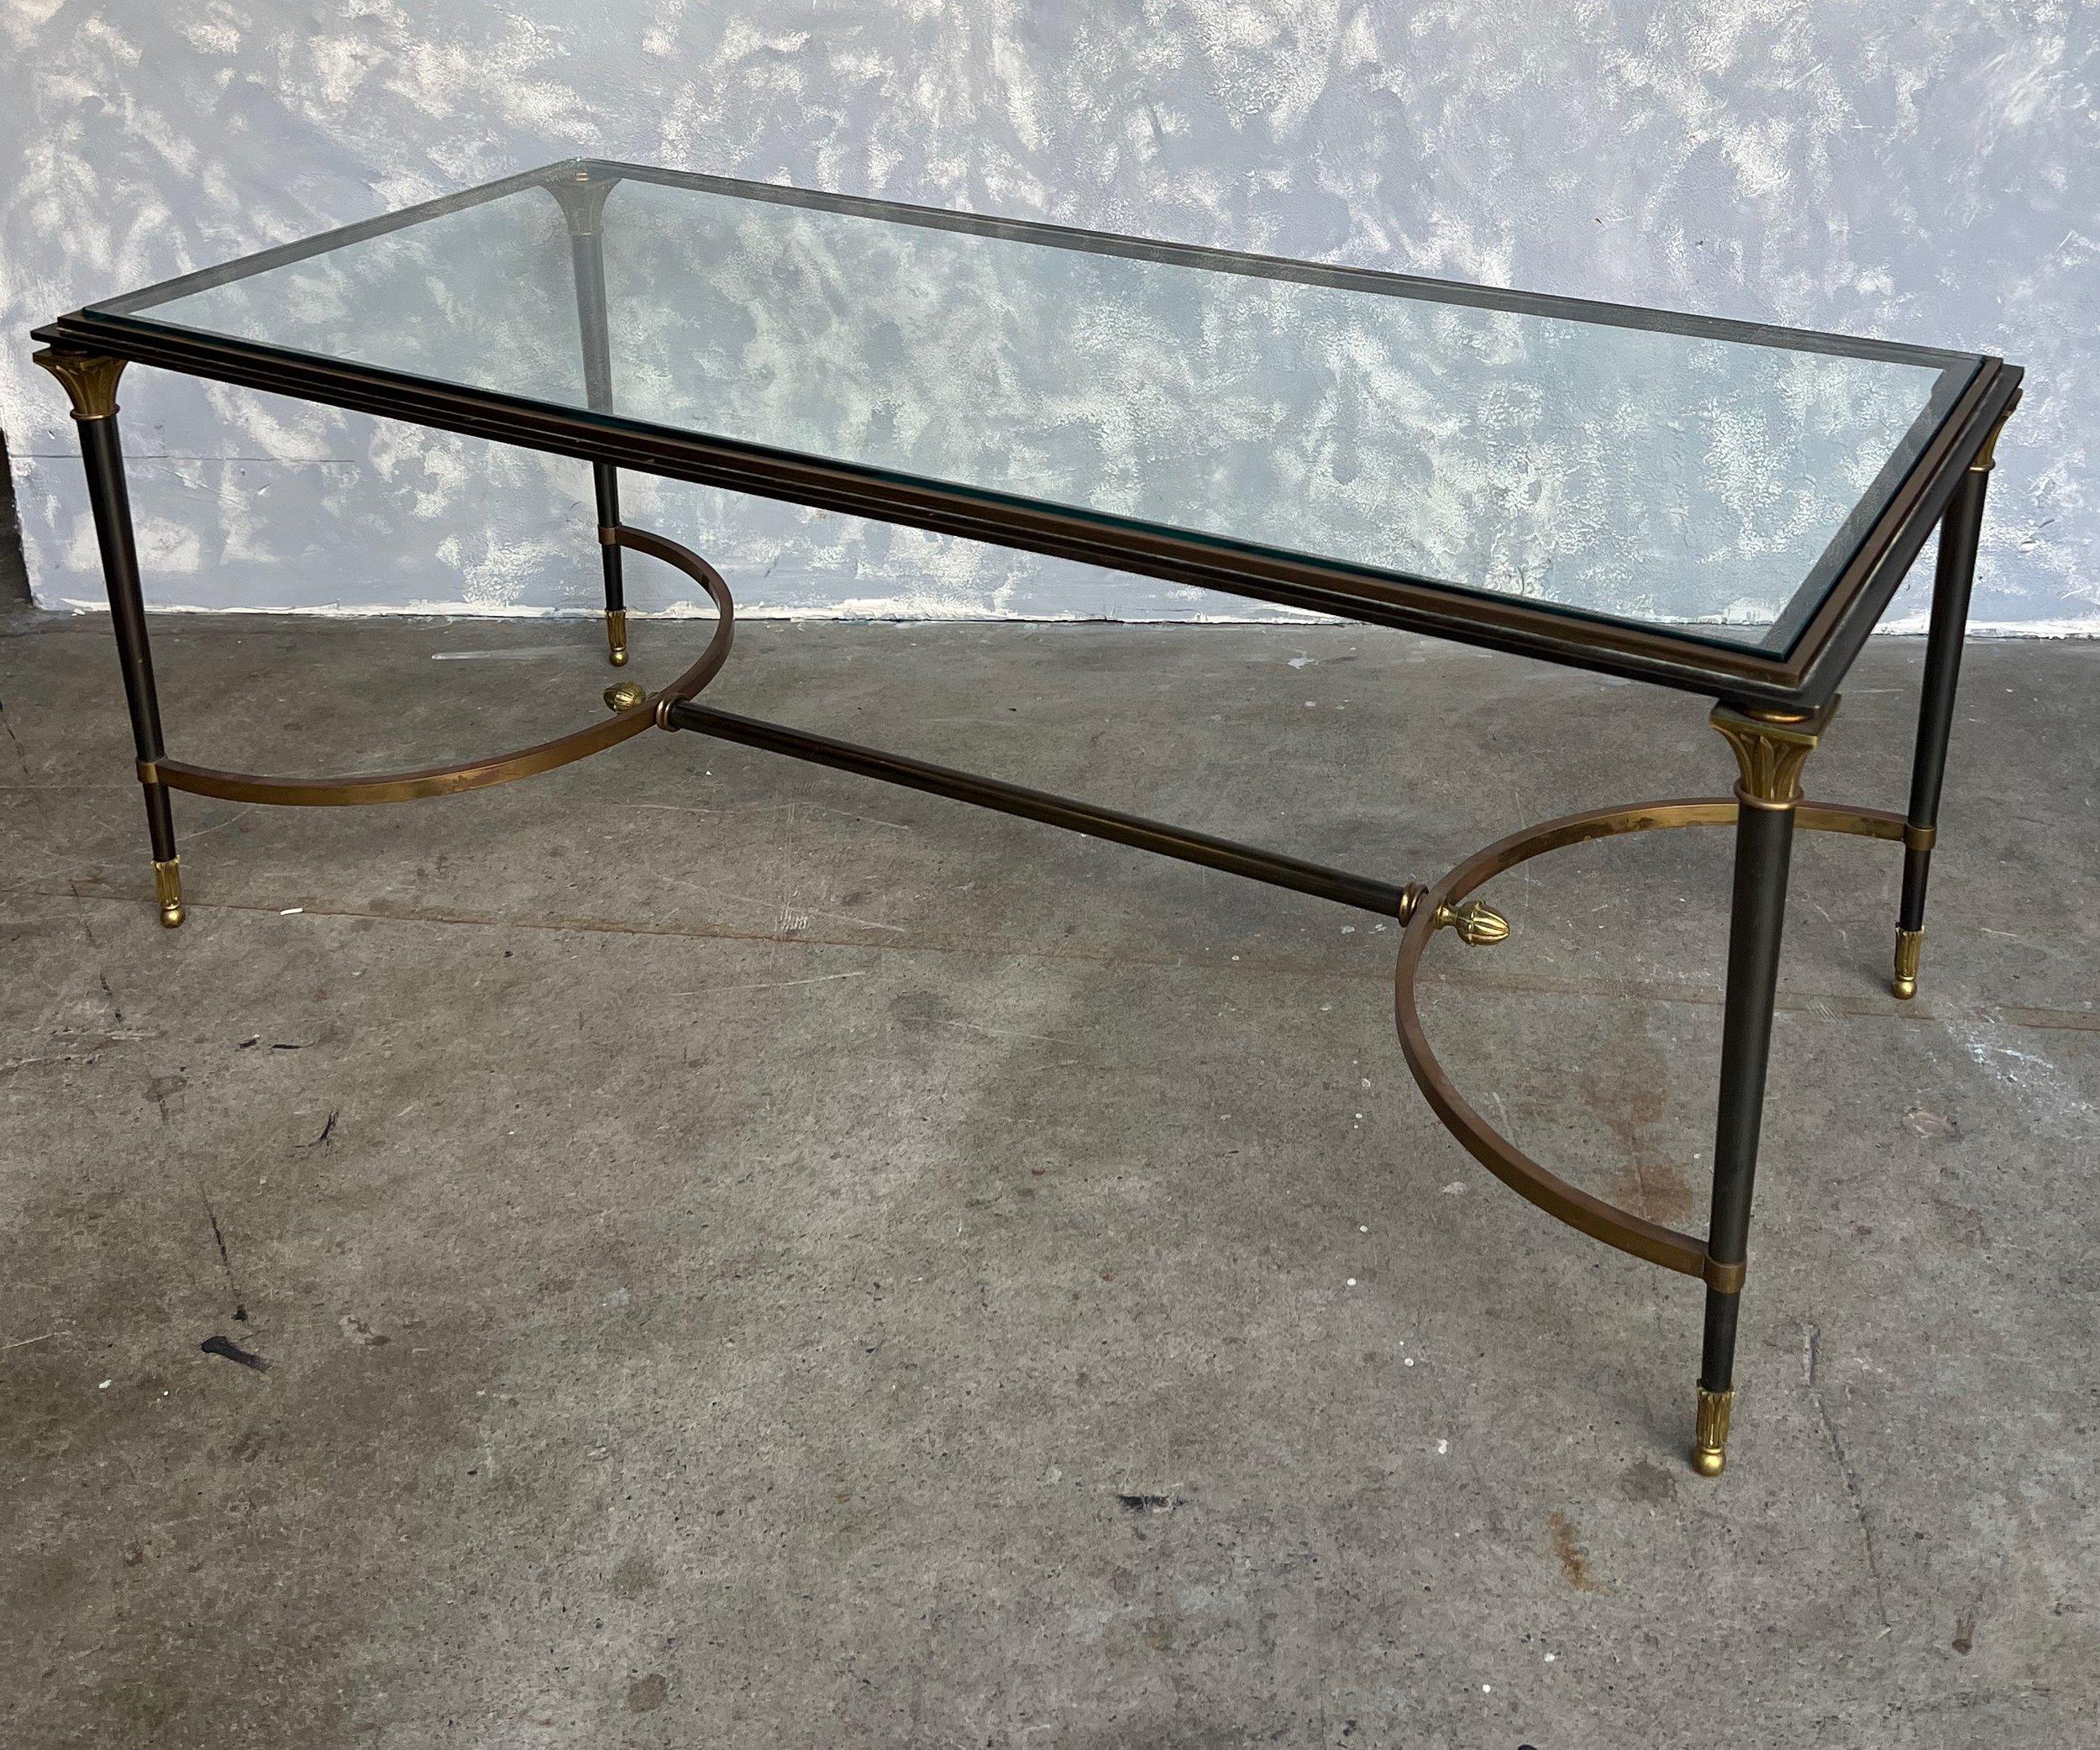 Une élégante table basse de style néoclassique italien des années 1960 dans le style de Jansen. La table est en acier avec des éléments décoratifs classiques en bronze doré. Le plateau en verre s'adapte parfaitement et la table est fixée par une